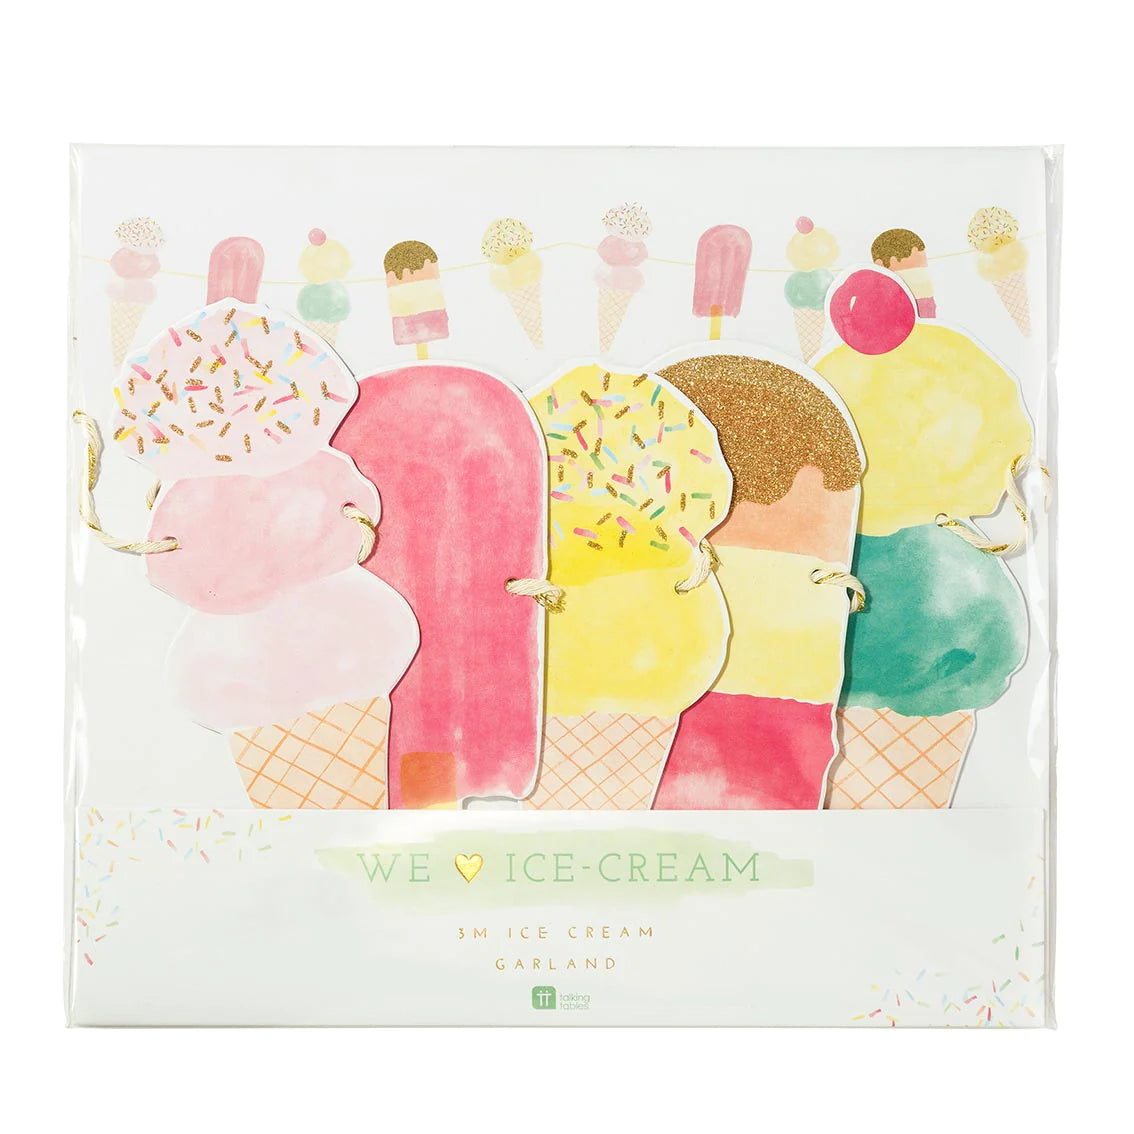 Garland: We Heart Ice Cream